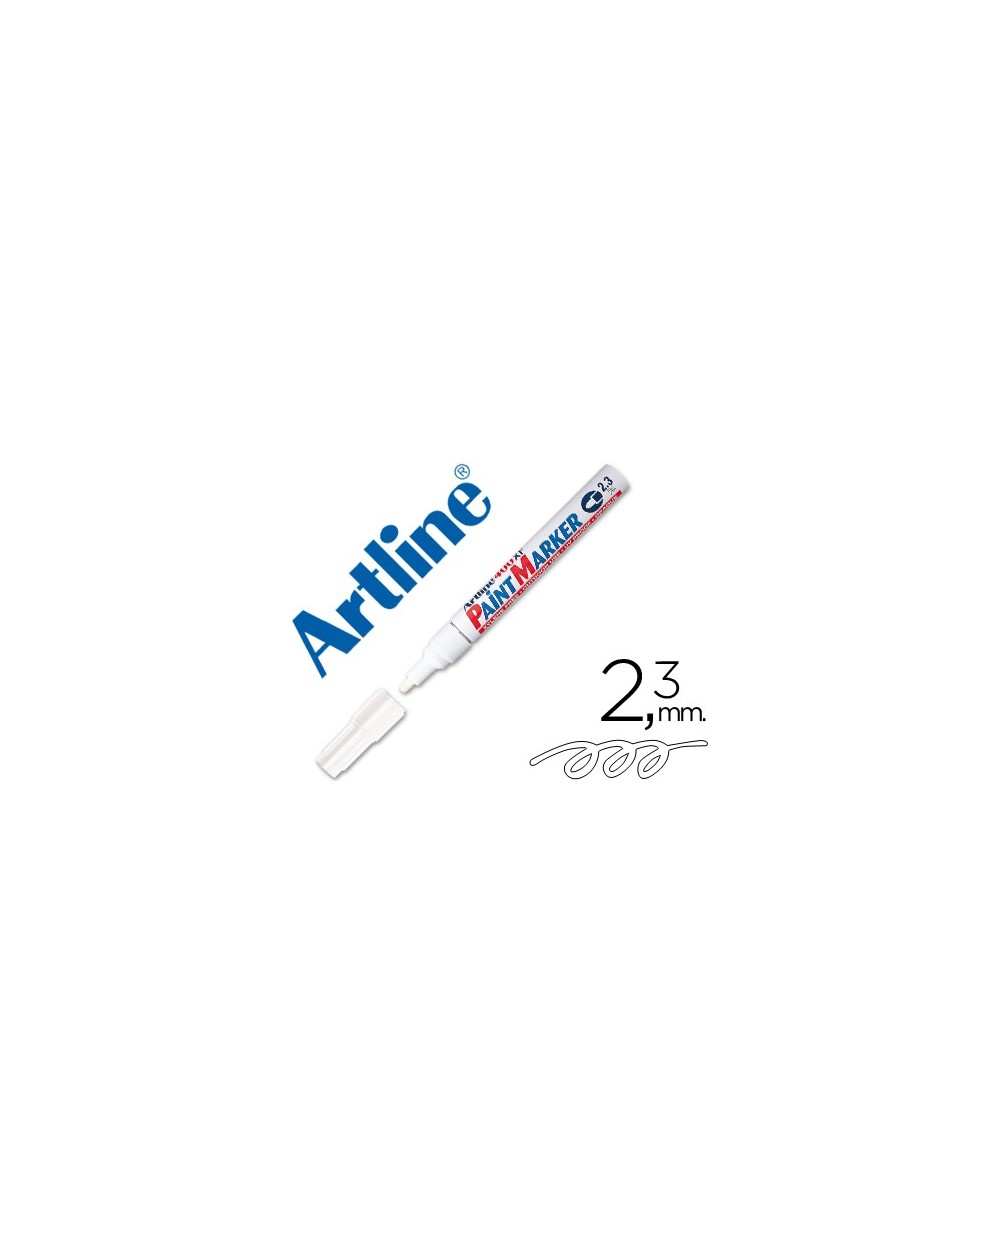 Rotulador artline marcador permanente ek 400 xf blanco punta redonda 23 mm metal caucho y plastico